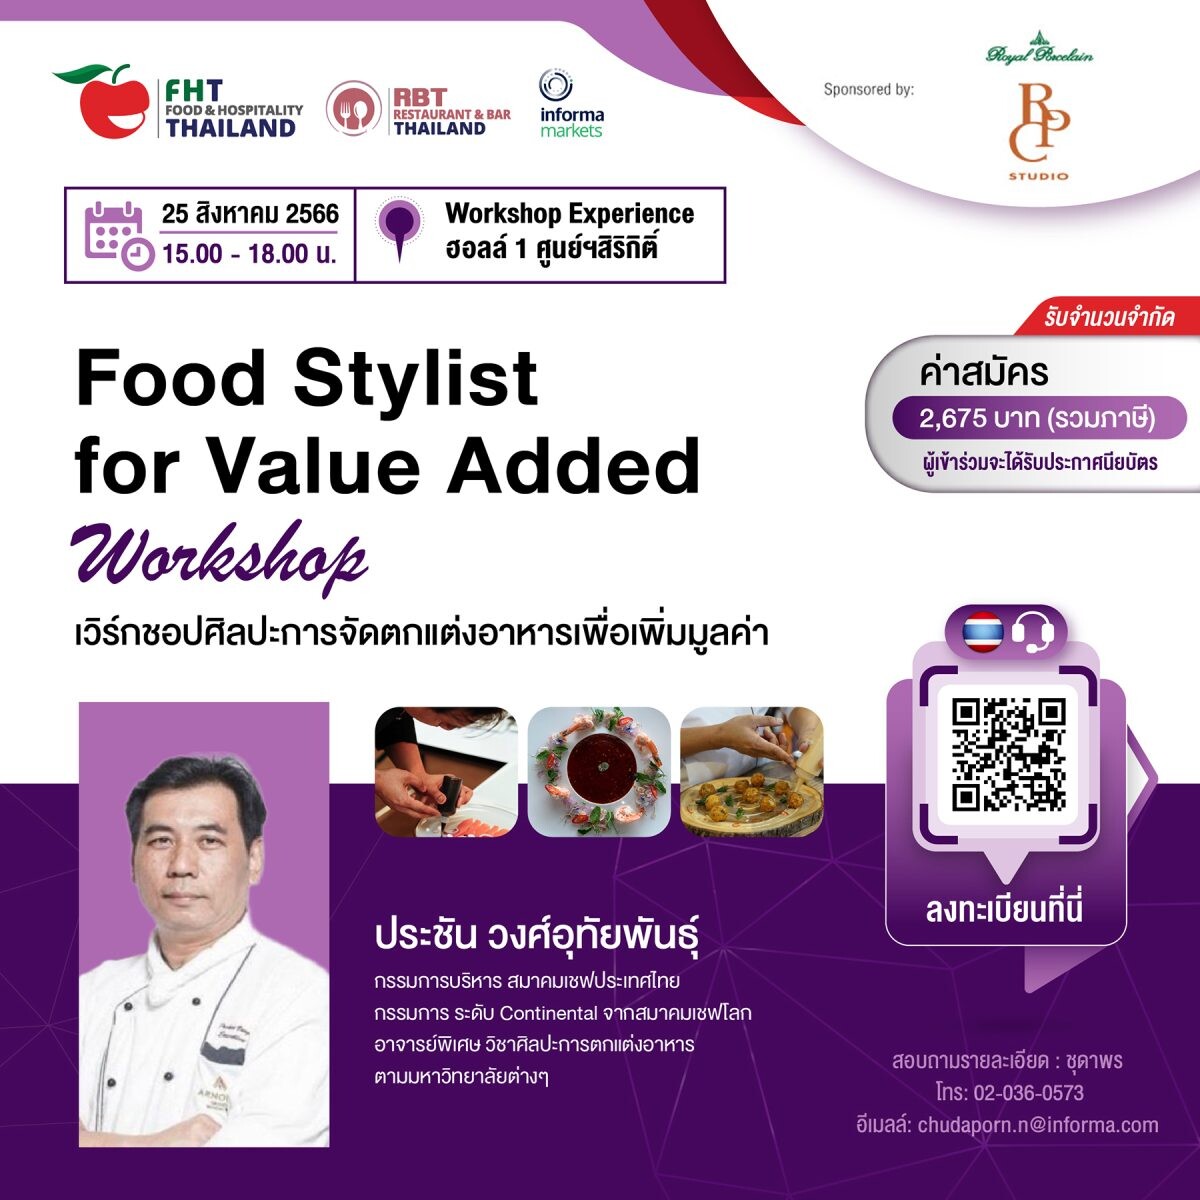 เชิญผู้สนใจร่วมเวิร์กชอป ศิลปะการจัดตกแต่งอาหารเพื่อเพิ่มมูลค่า โดยเชฟ "ประชัน วงศ์อุทัยพันธุ์" ในงาน Food &amp; Hospitality Thailand 2023